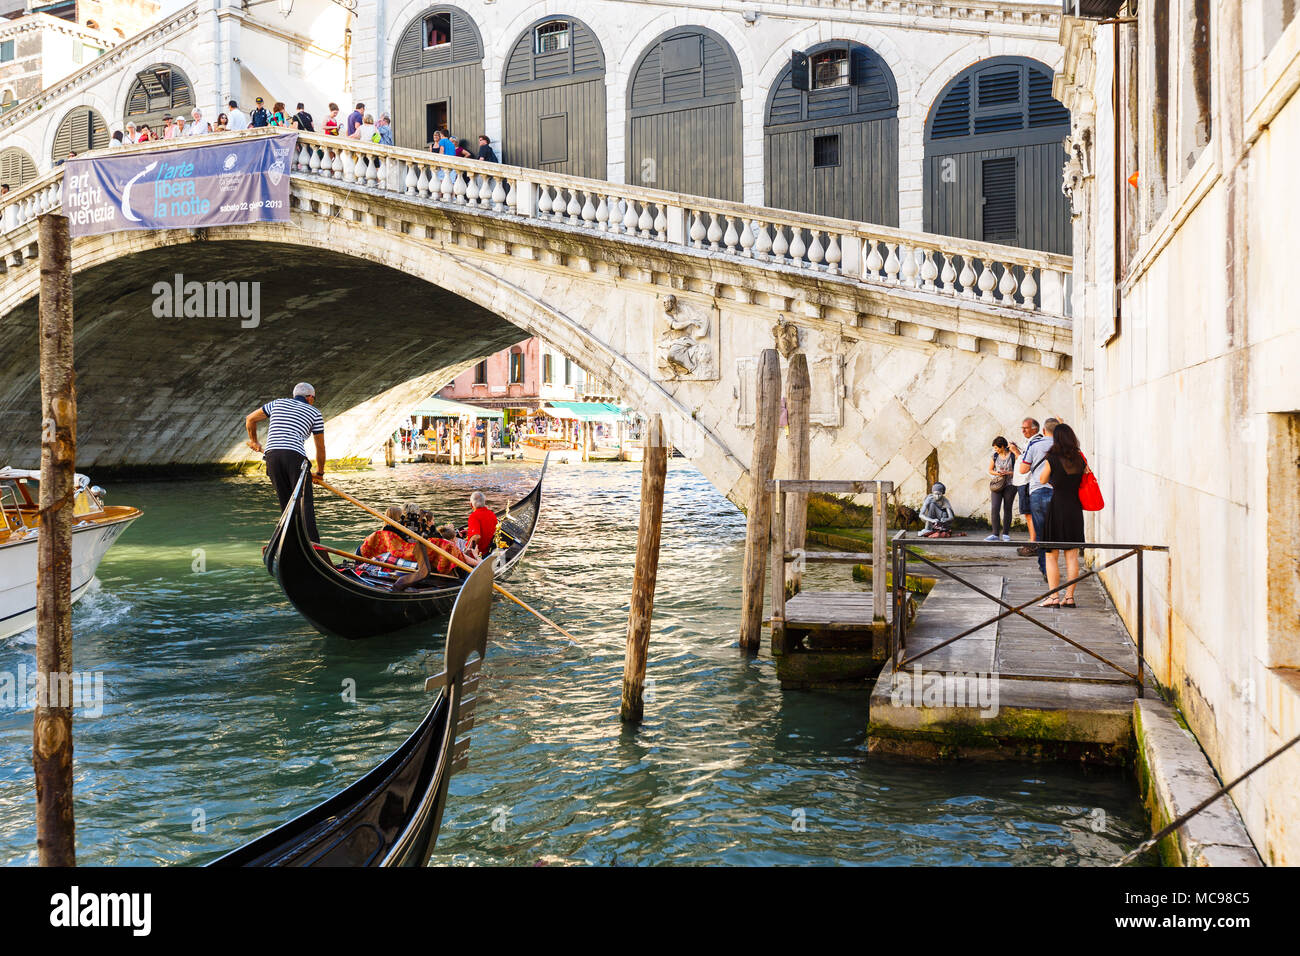 Venezia, Italia - Giugno, 21, 2013: Vista della gondola sul Canal Grande e sul Ponte di Rialto, molti turisti su un ponte, la gente a restare in prossimità dell'acqua. Sunny summe Foto Stock